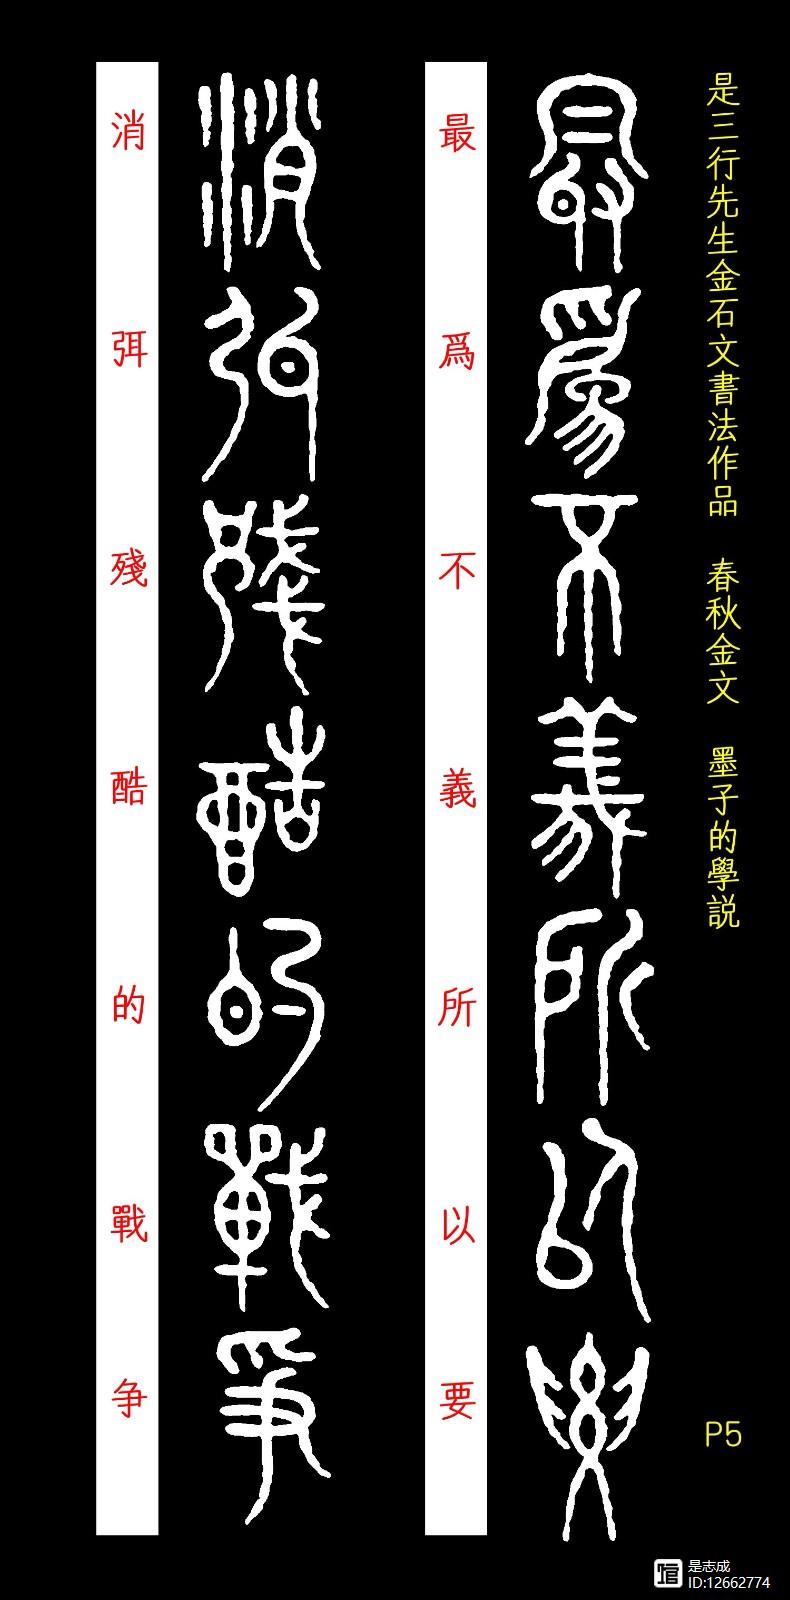 【原】《春秋金文 / 墨子的学说》(附译文)是三行先生金石文书法作品